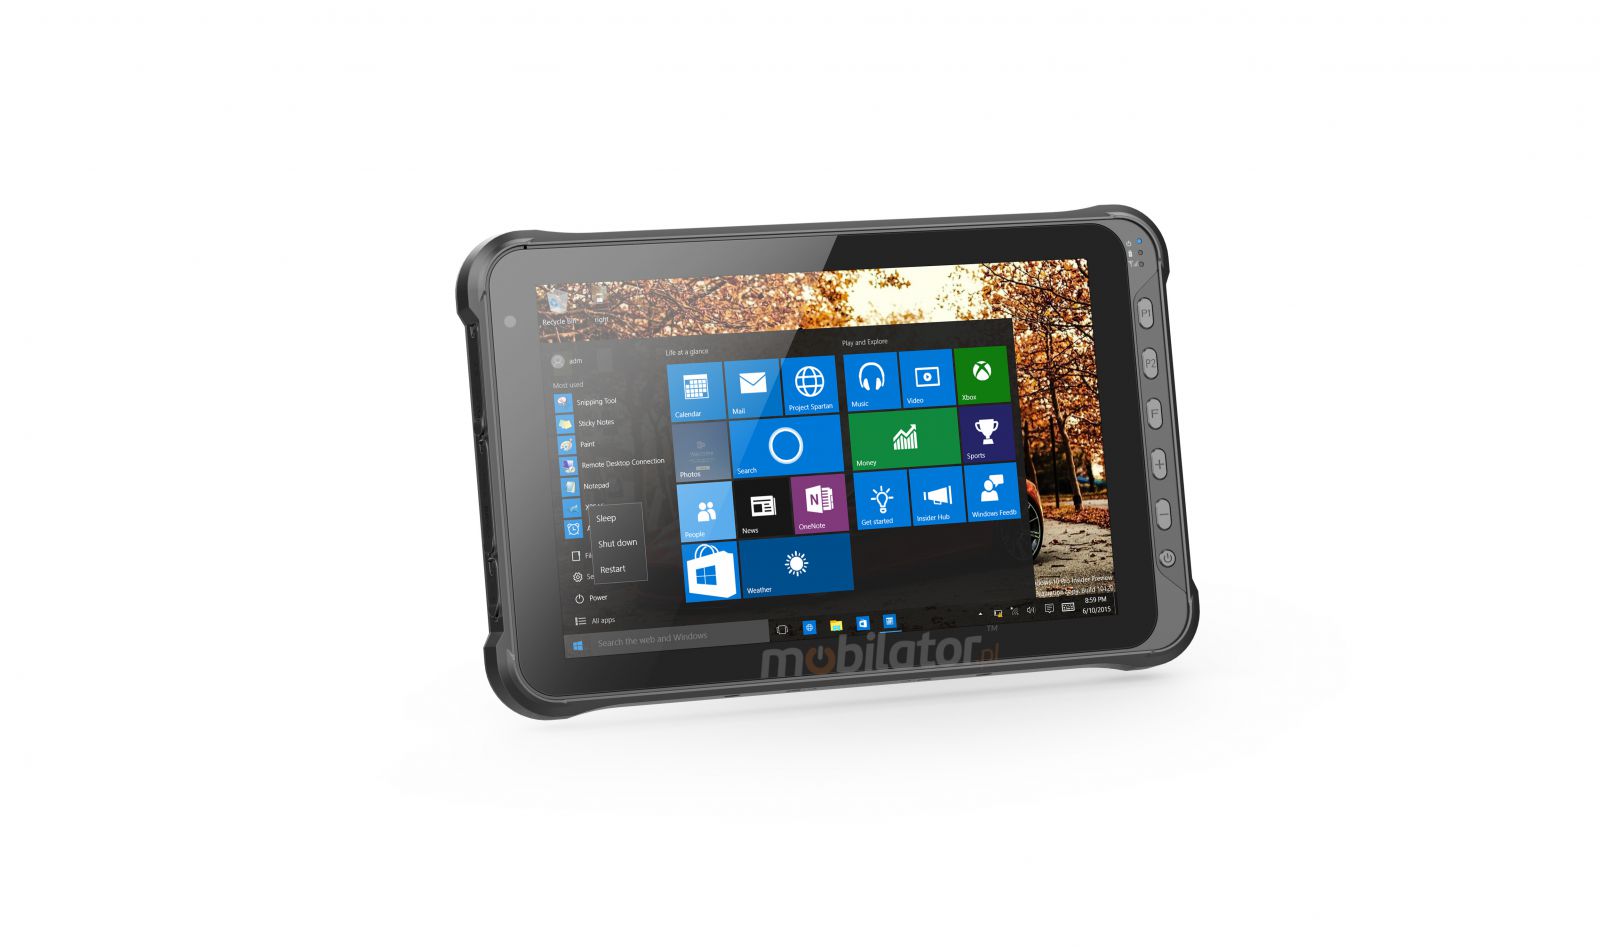 Emdoor I15HH v.12 - Wstrzsoodporny tablet z WINDOWS 10 PRO, BT 4.2, NFC, 4G, 4GB RAM pamici, dyskiem 128GB, czytnikiem kodw 2D Honeywell